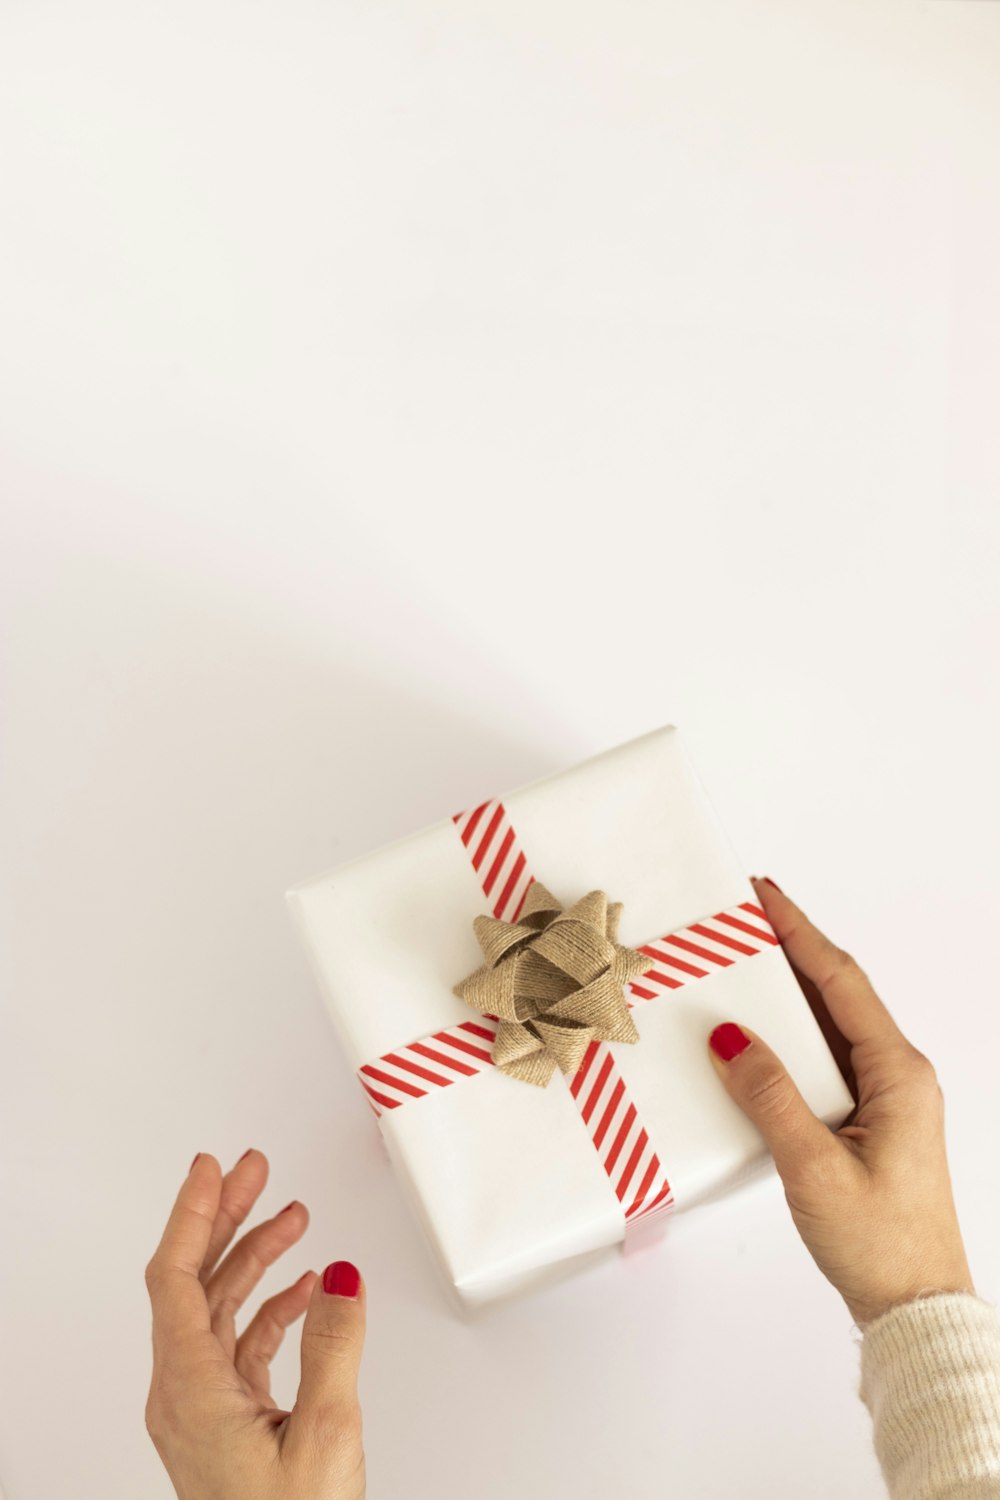 persona con caja de regalo blanca y roja